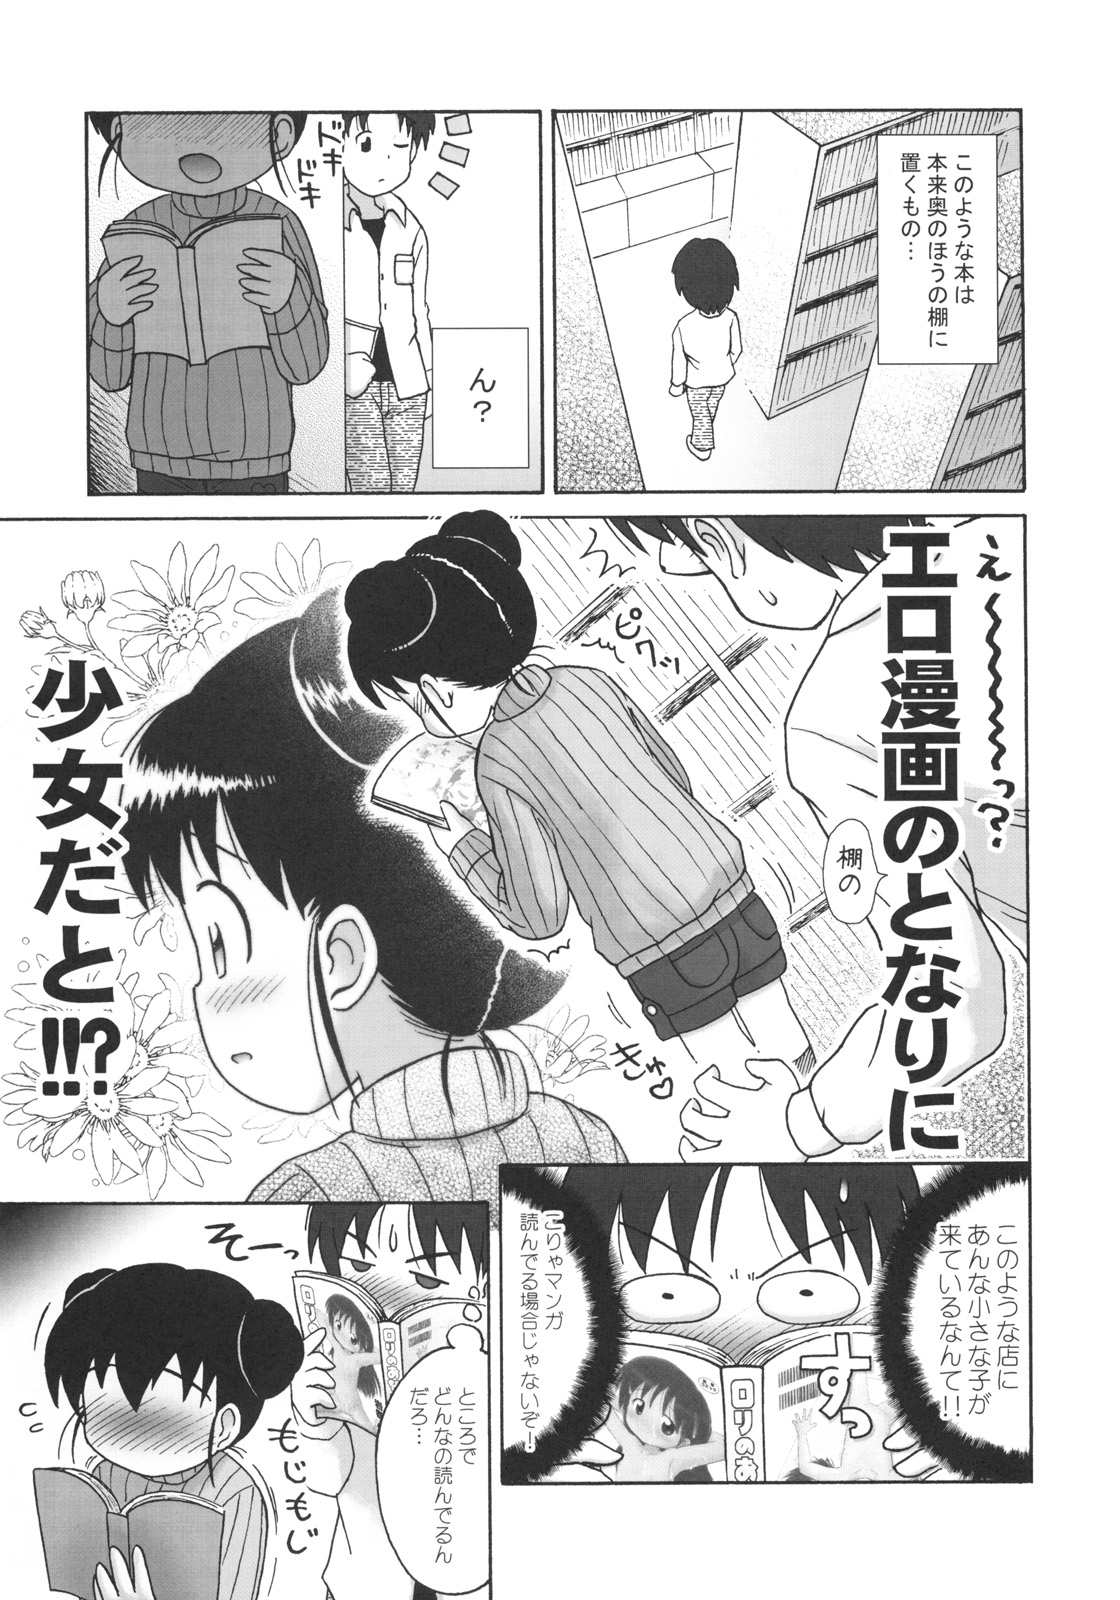 (Puniket 19) AOI (Lasto) Doki Doki Tachiyomi Onii-chan page 6 full.